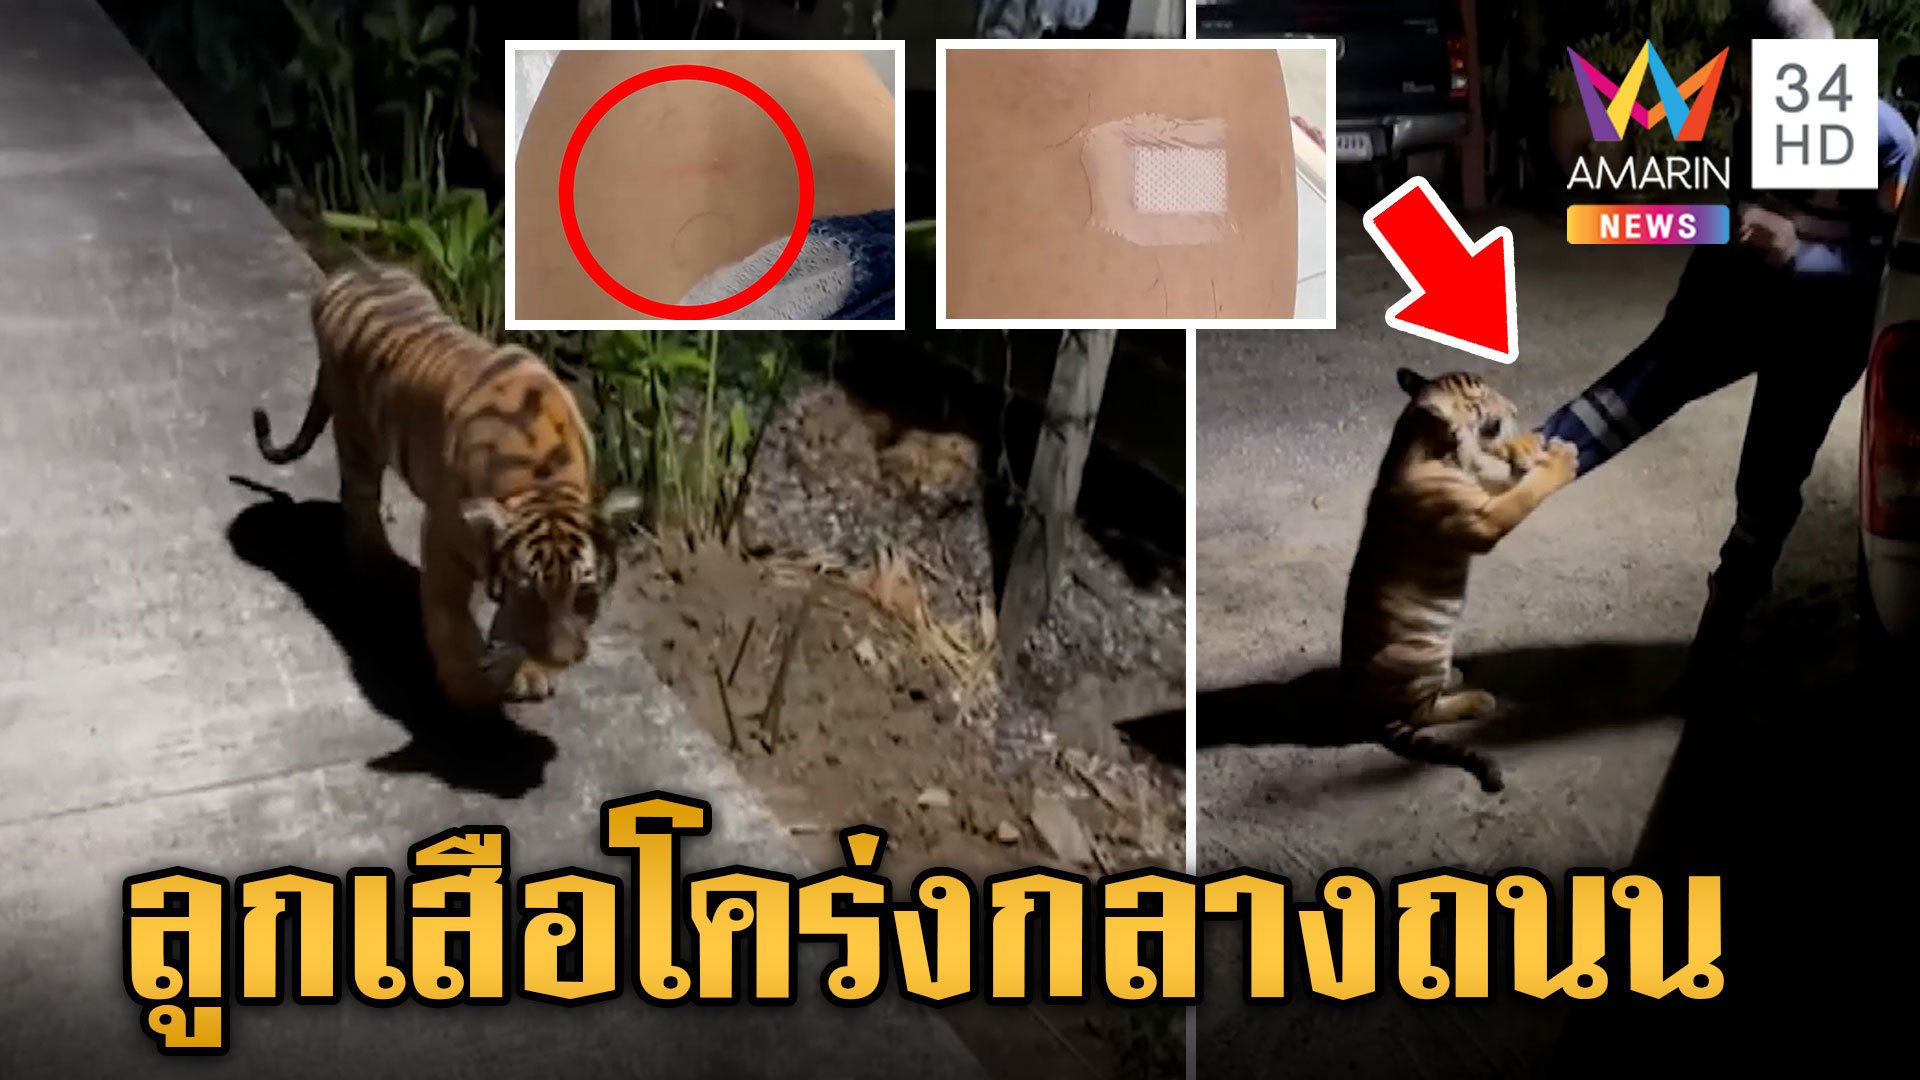 ผวา! ลูกเสือโคร่งโผล่กลางถนน เจ้าของอ้างเป็นลูกผสมสิงโต | ข่าวเย็นอมรินทร์ | 16 พ.ค. 67 | AMARIN TVHD34